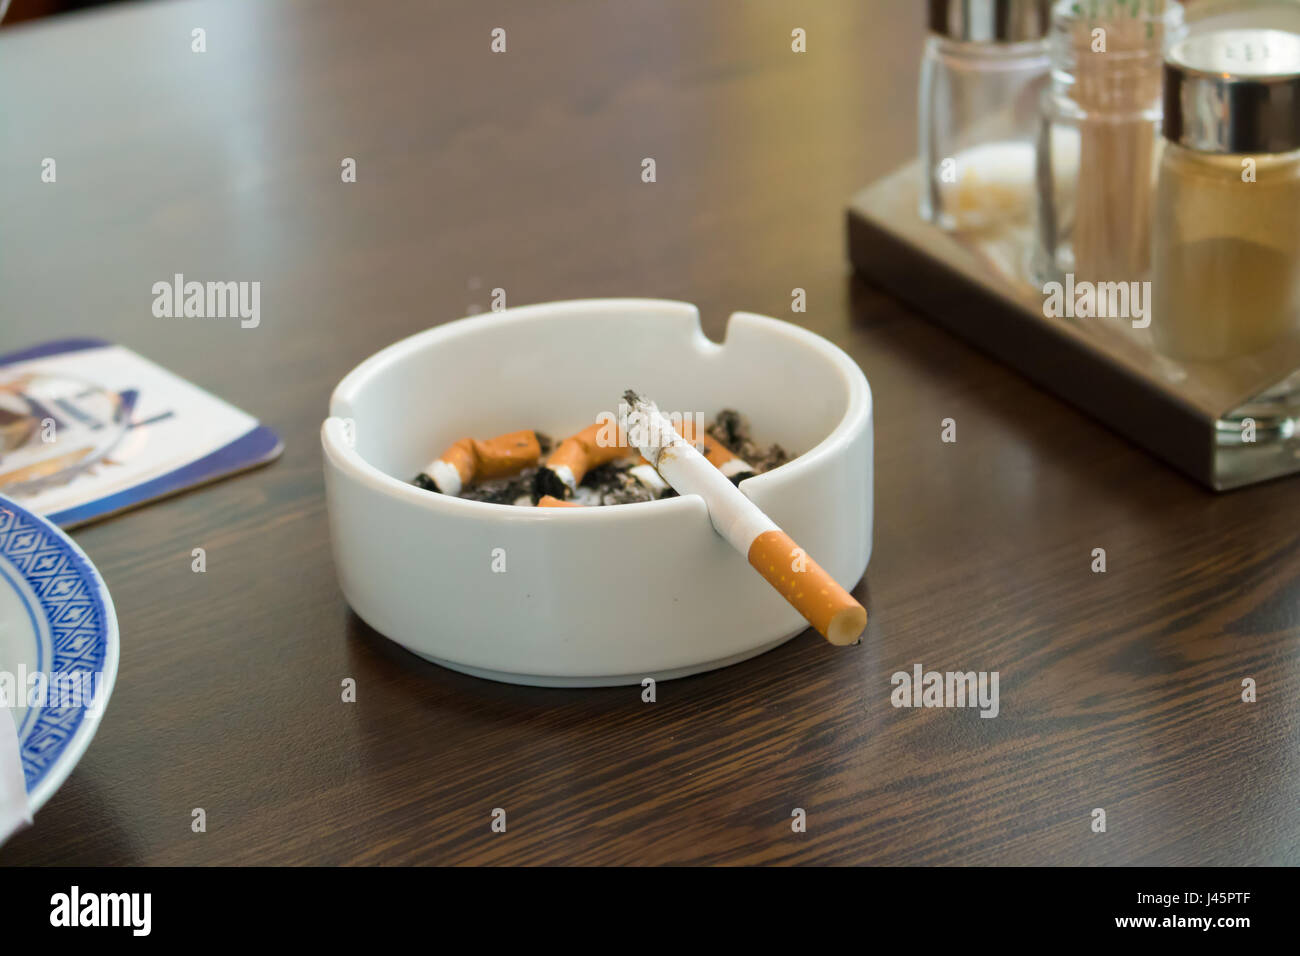 Aschenbecher und Zigaretten, auf einem Tisch, Asche, Tablett, Glas, sucht,  b Stockfotografie - Alamy